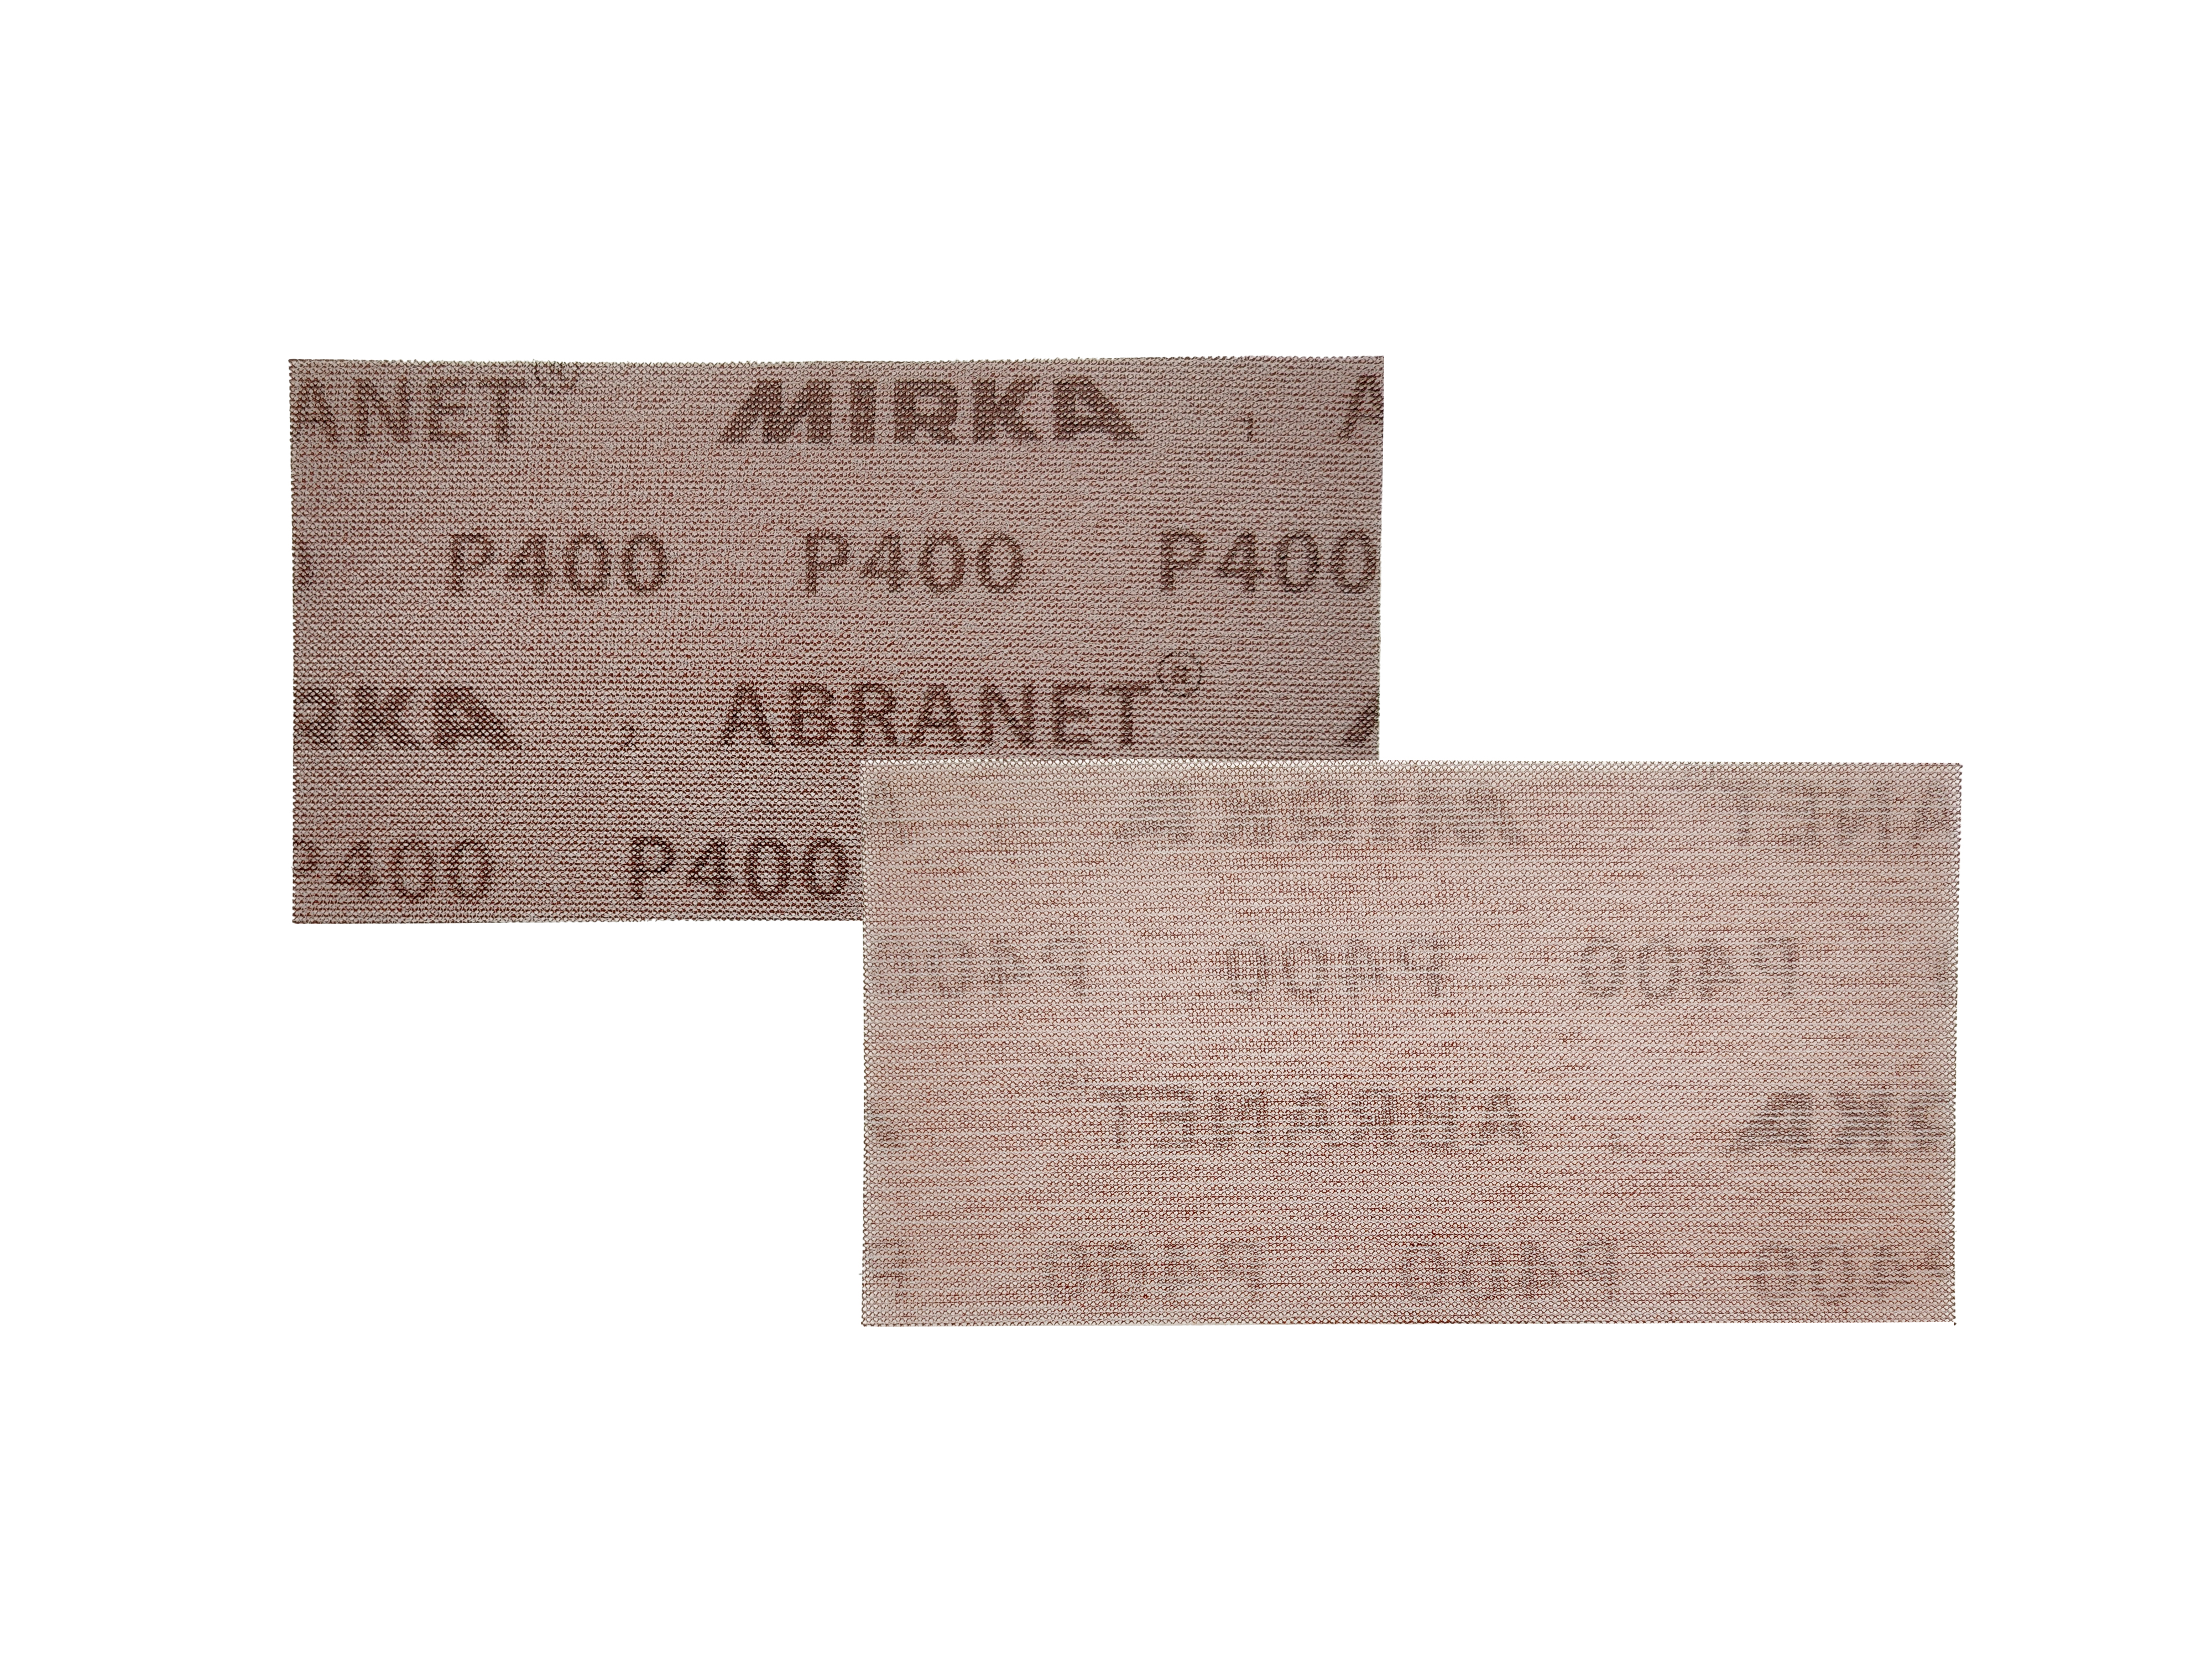 Abbildung Mirka Abranet 93x180mm Streifen Vorder- und Rückseite.